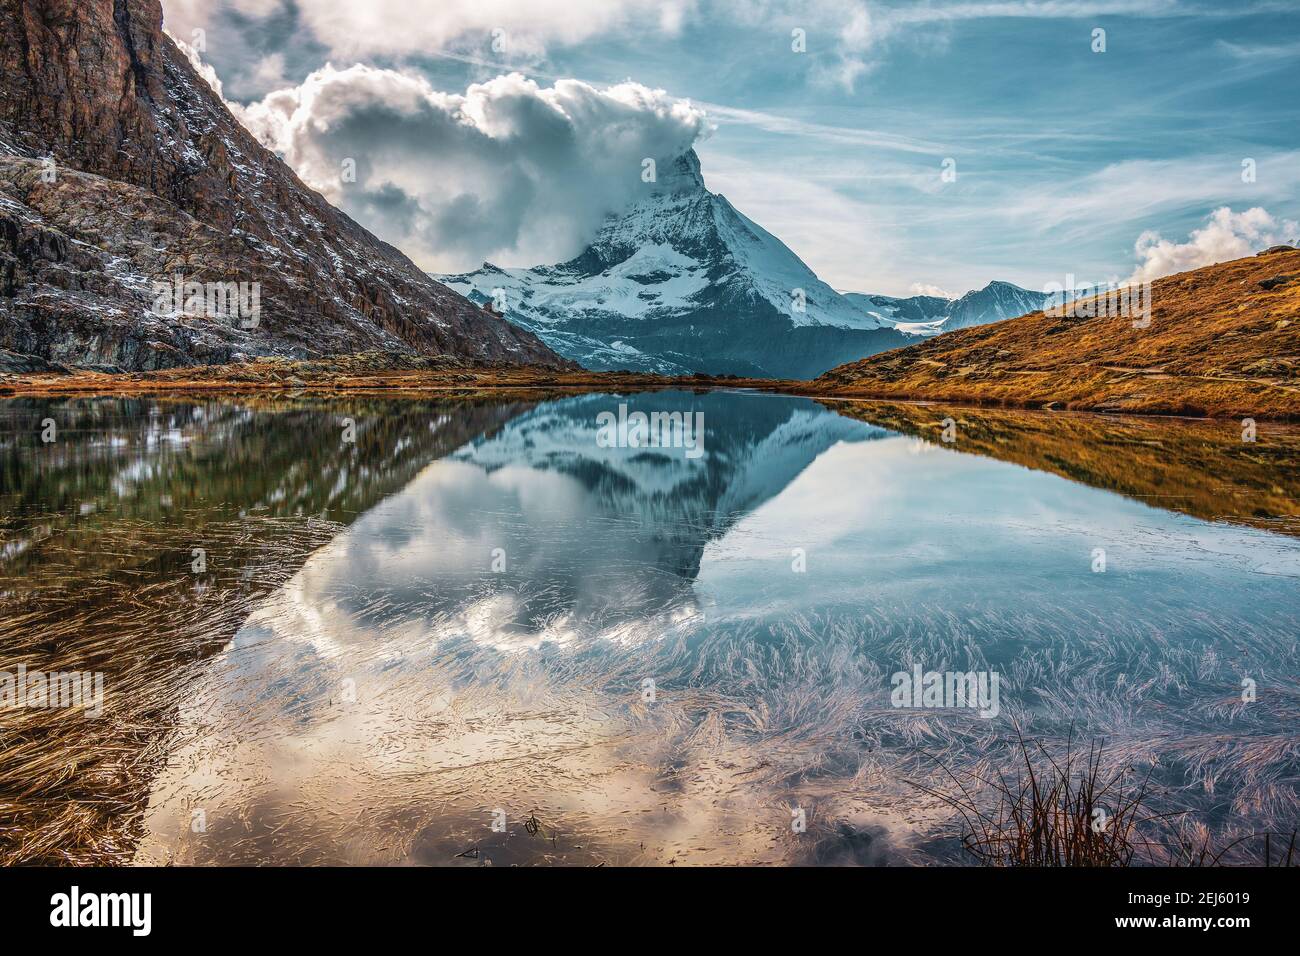 The Riffelsee, a lake near Zermatt. Switzerland. Stock Photo